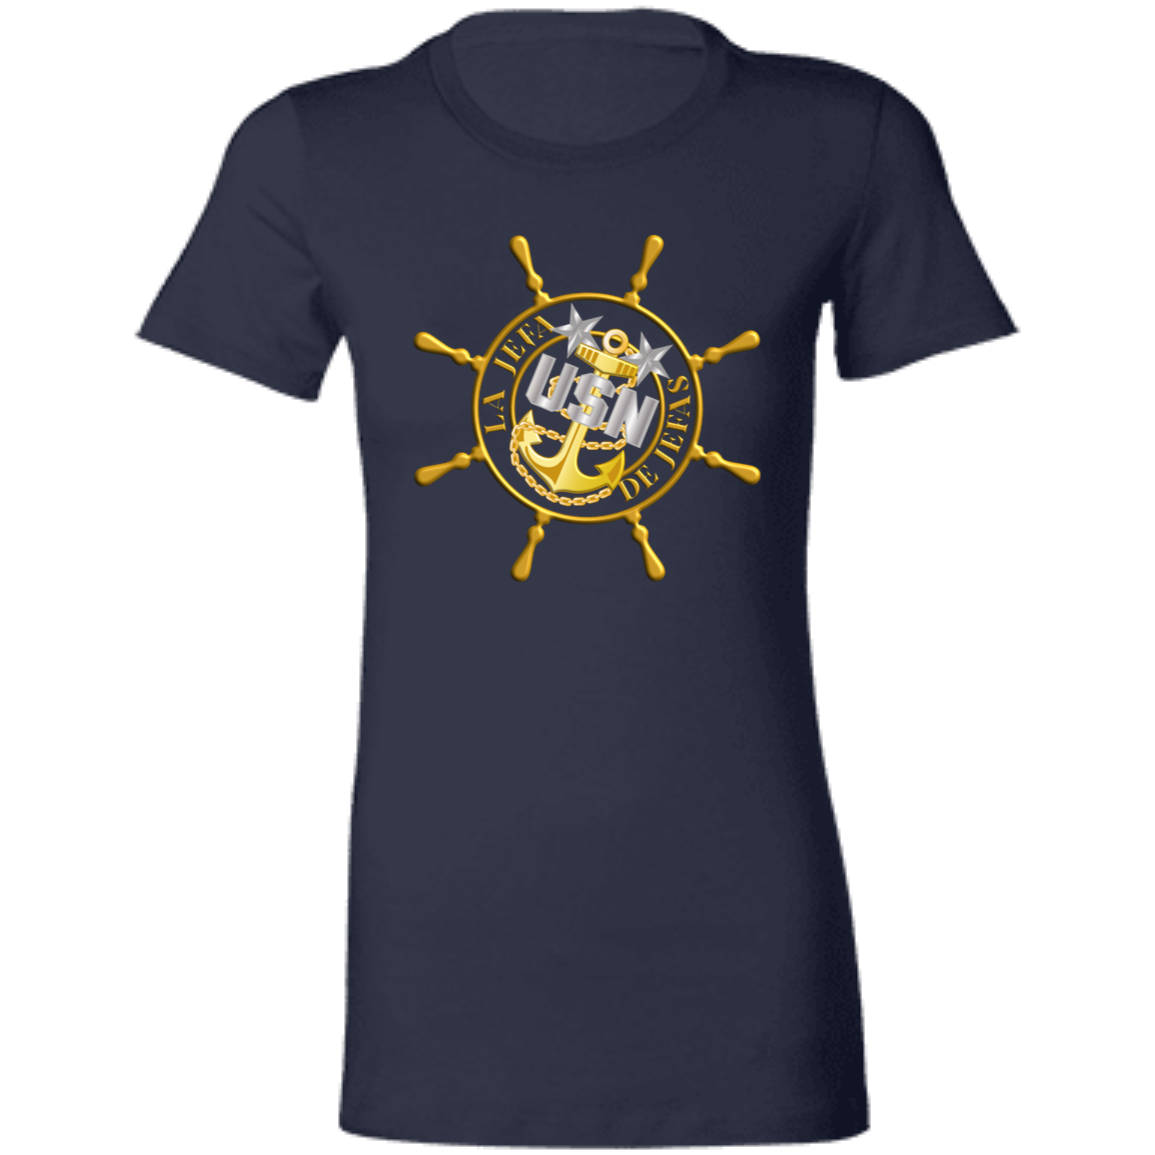 Ships Wheel Master Jefa Ladies' Favorite T-Shirt